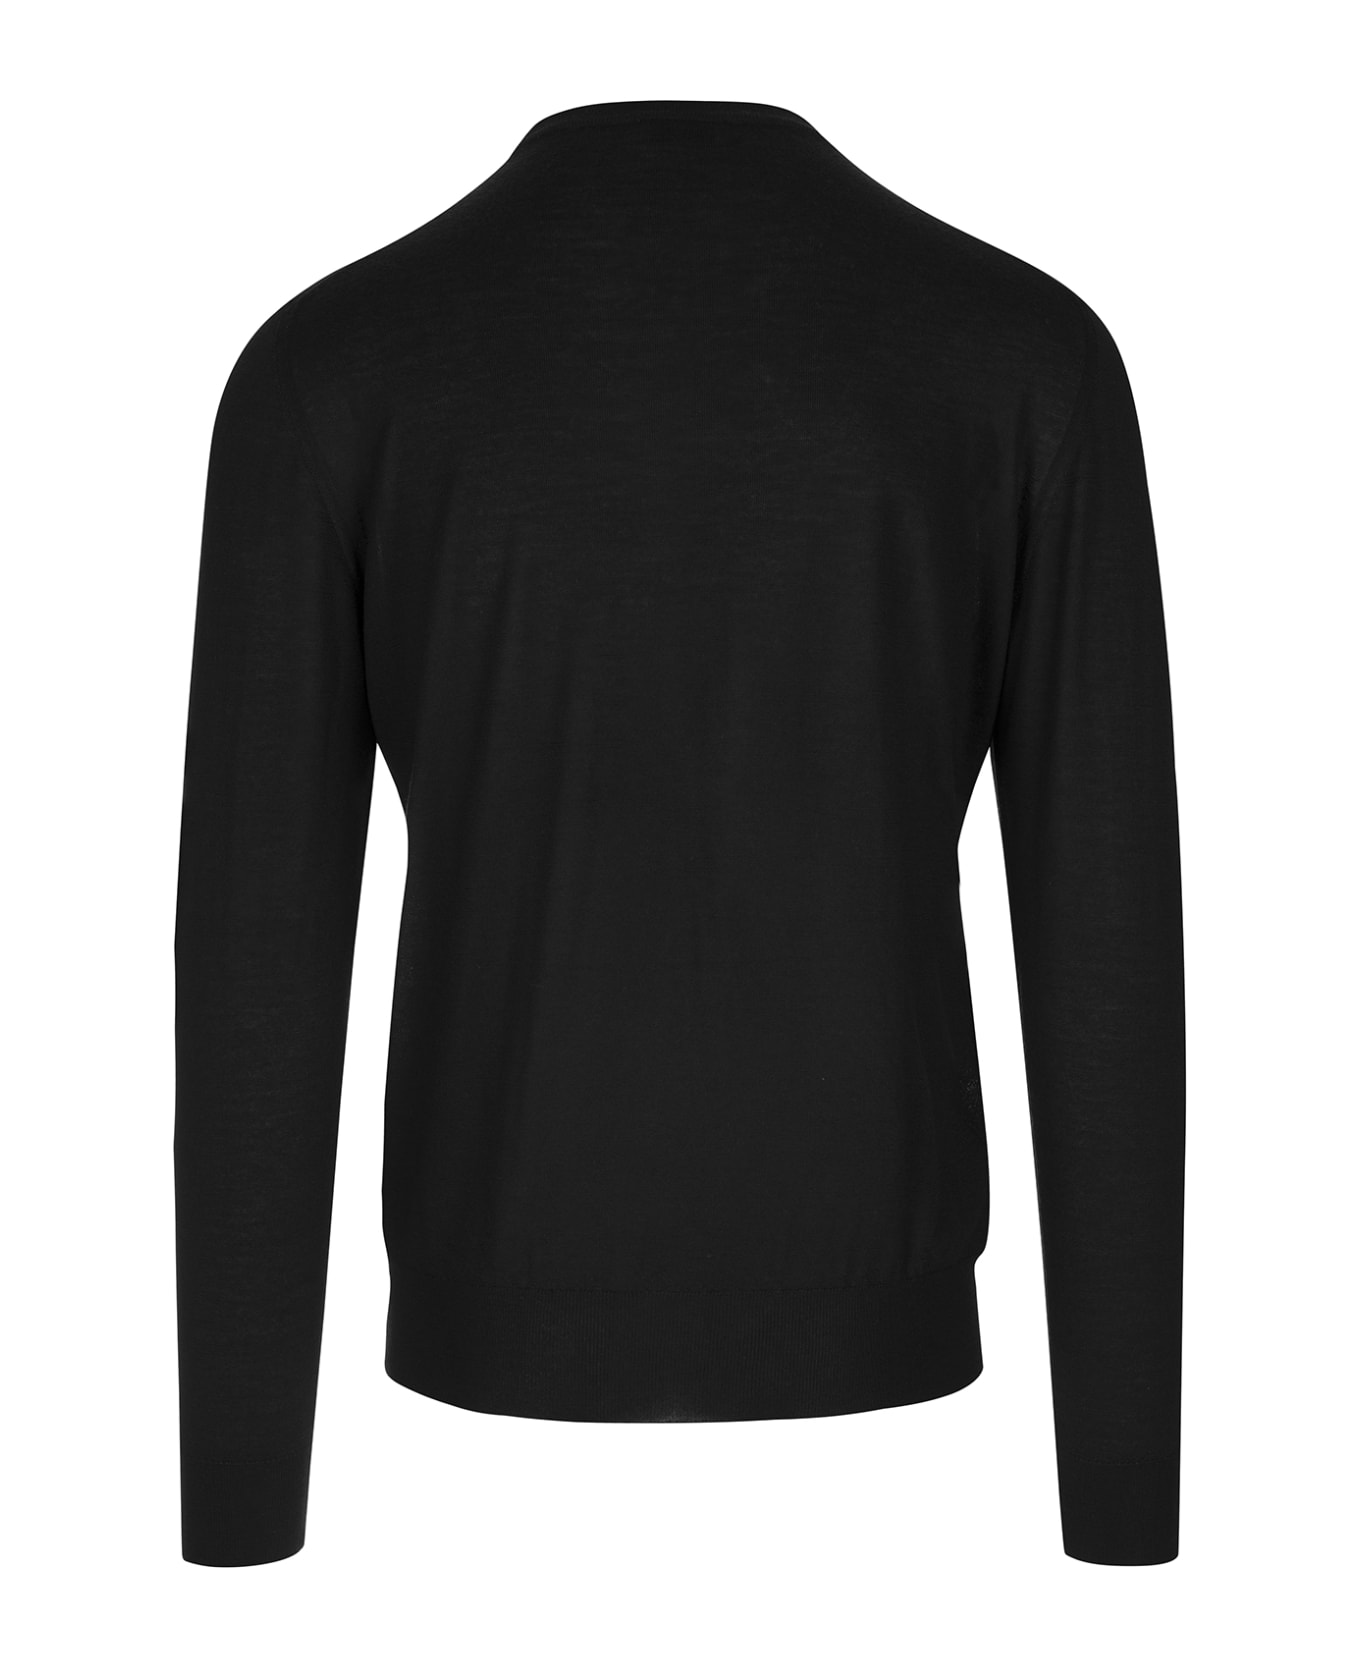 Fedeli Man Crew Neck Pullover In Black Cashmere - Black